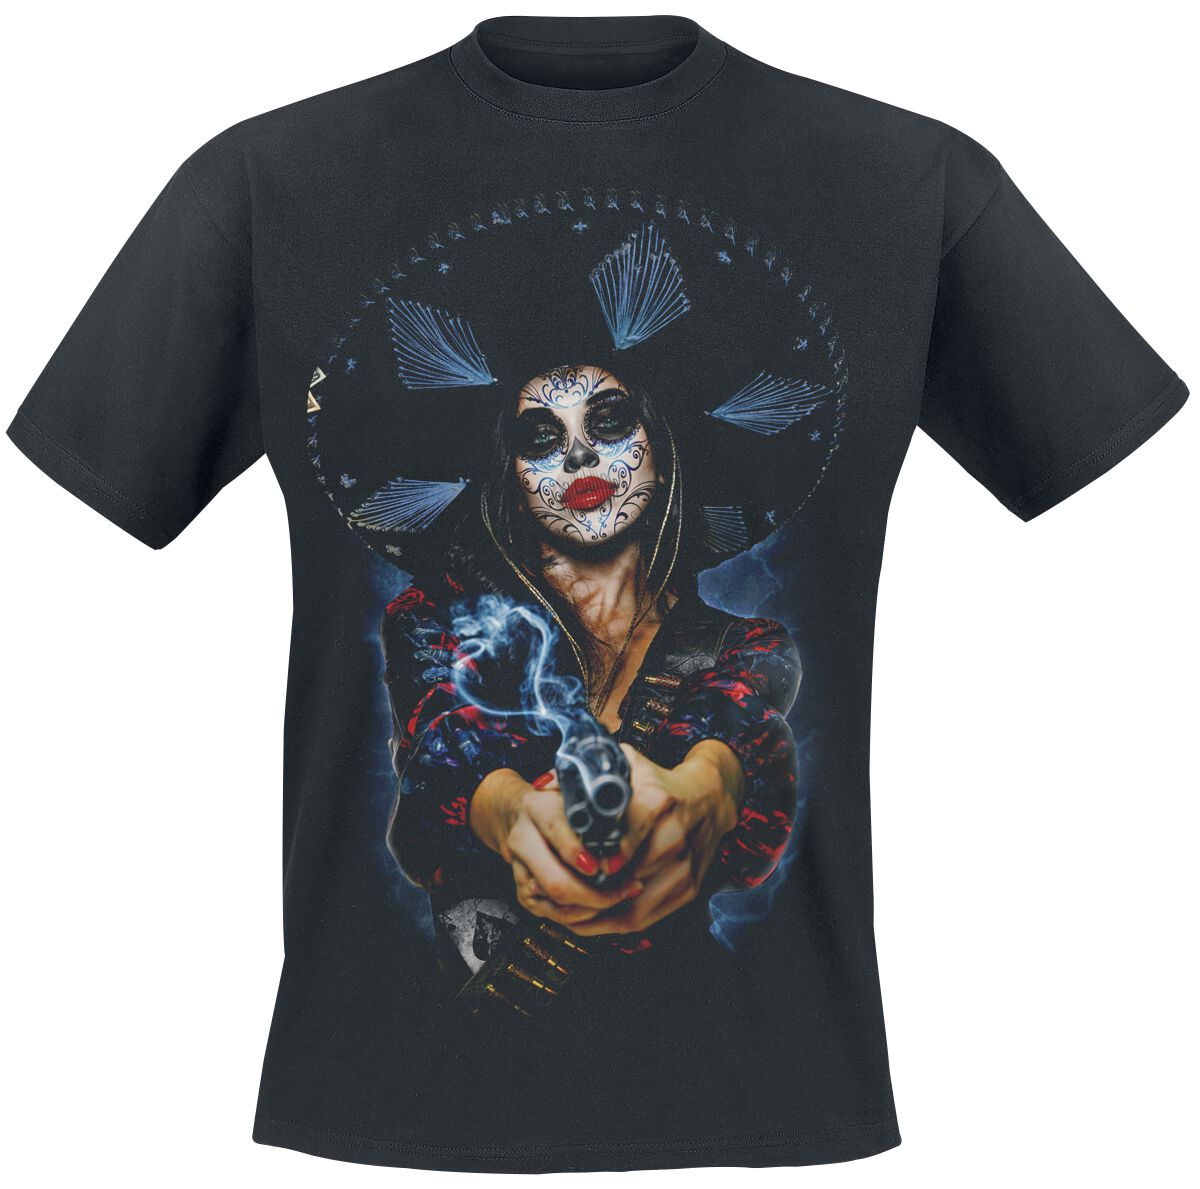 The Offspring T-Shirt - Bad Times - S bis XXL - für Männer - Größe M - schwarz  - Lizenziertes Merchandise!